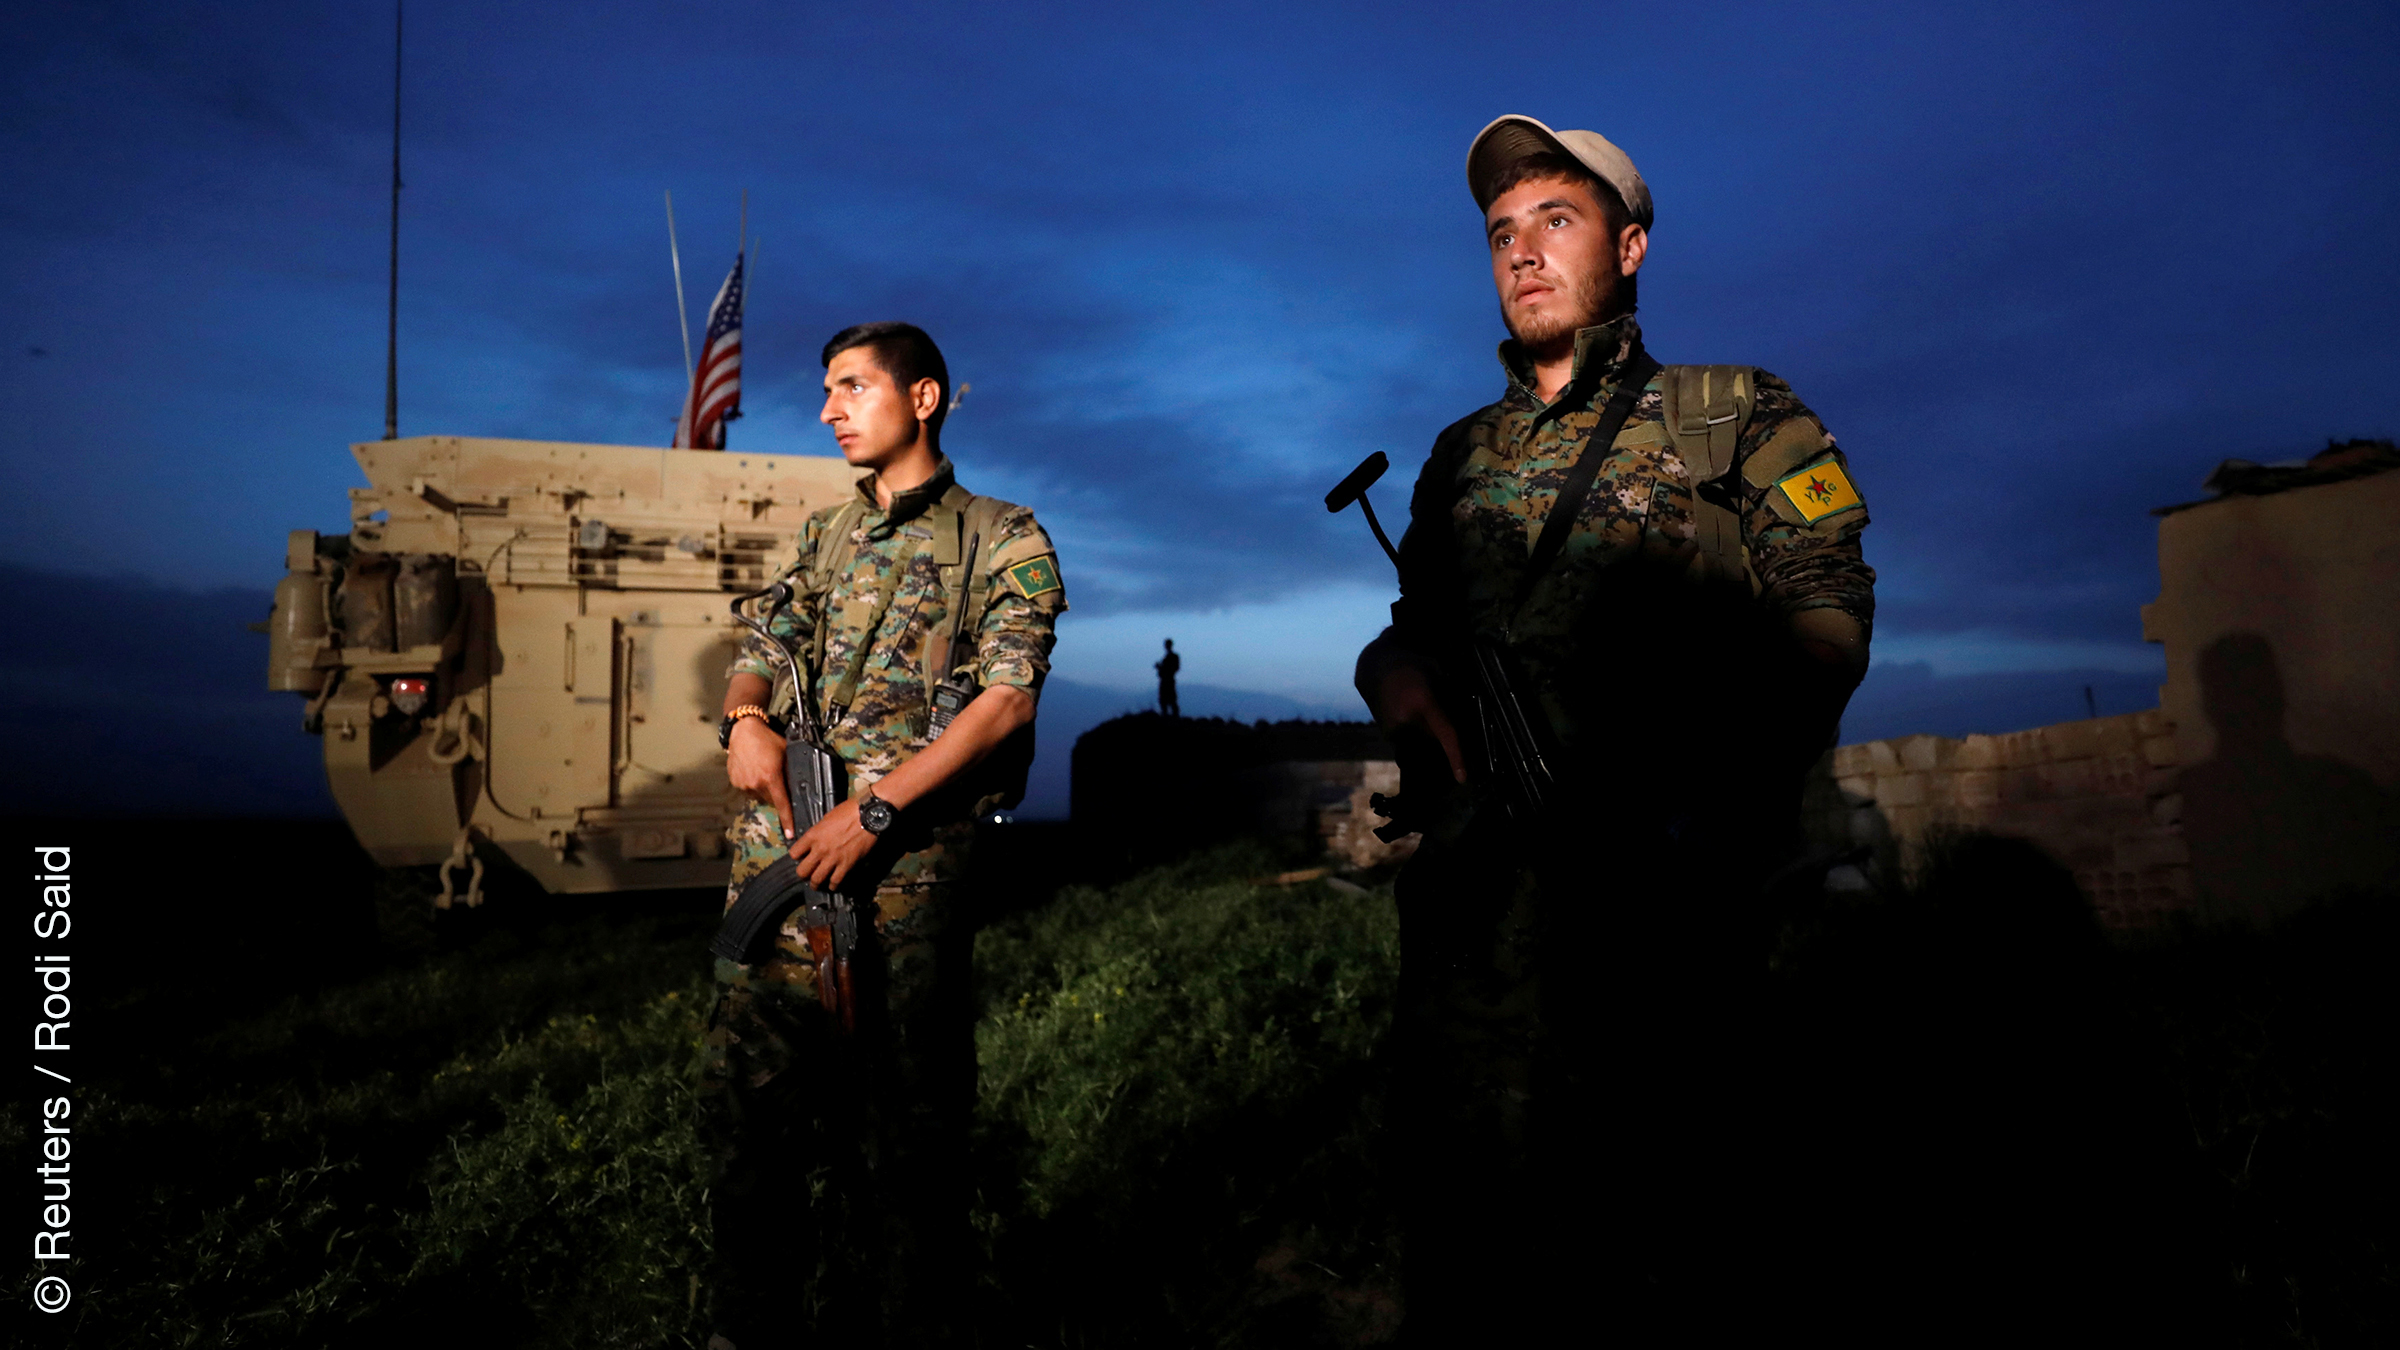 Kurdische Kämpfer nahe der türkischen Grenze.